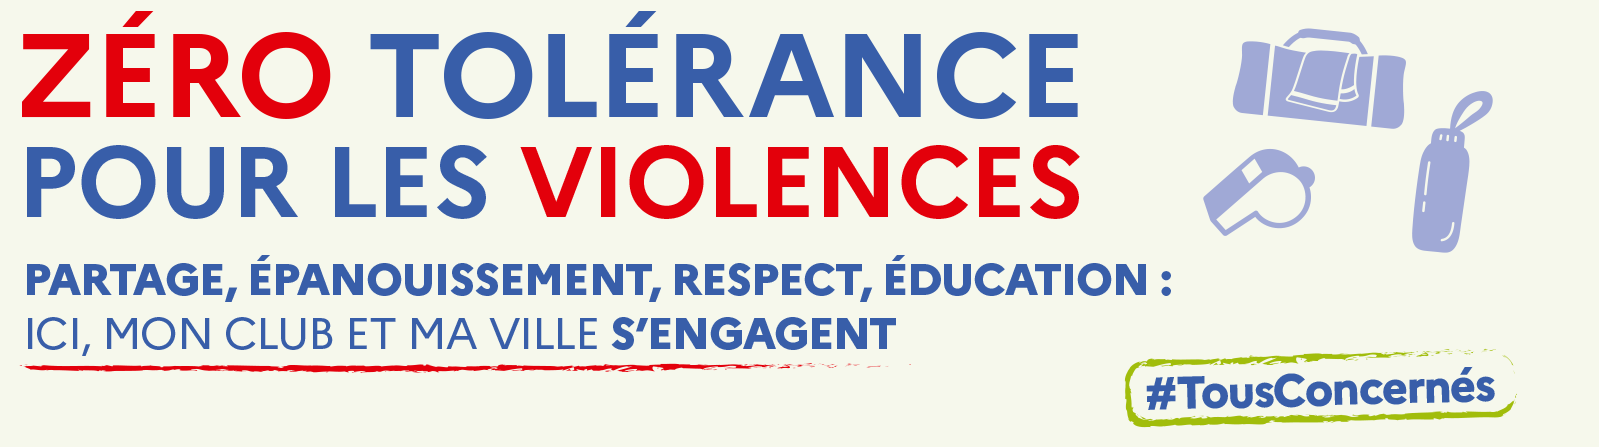 Zéro tolérance pour les violences